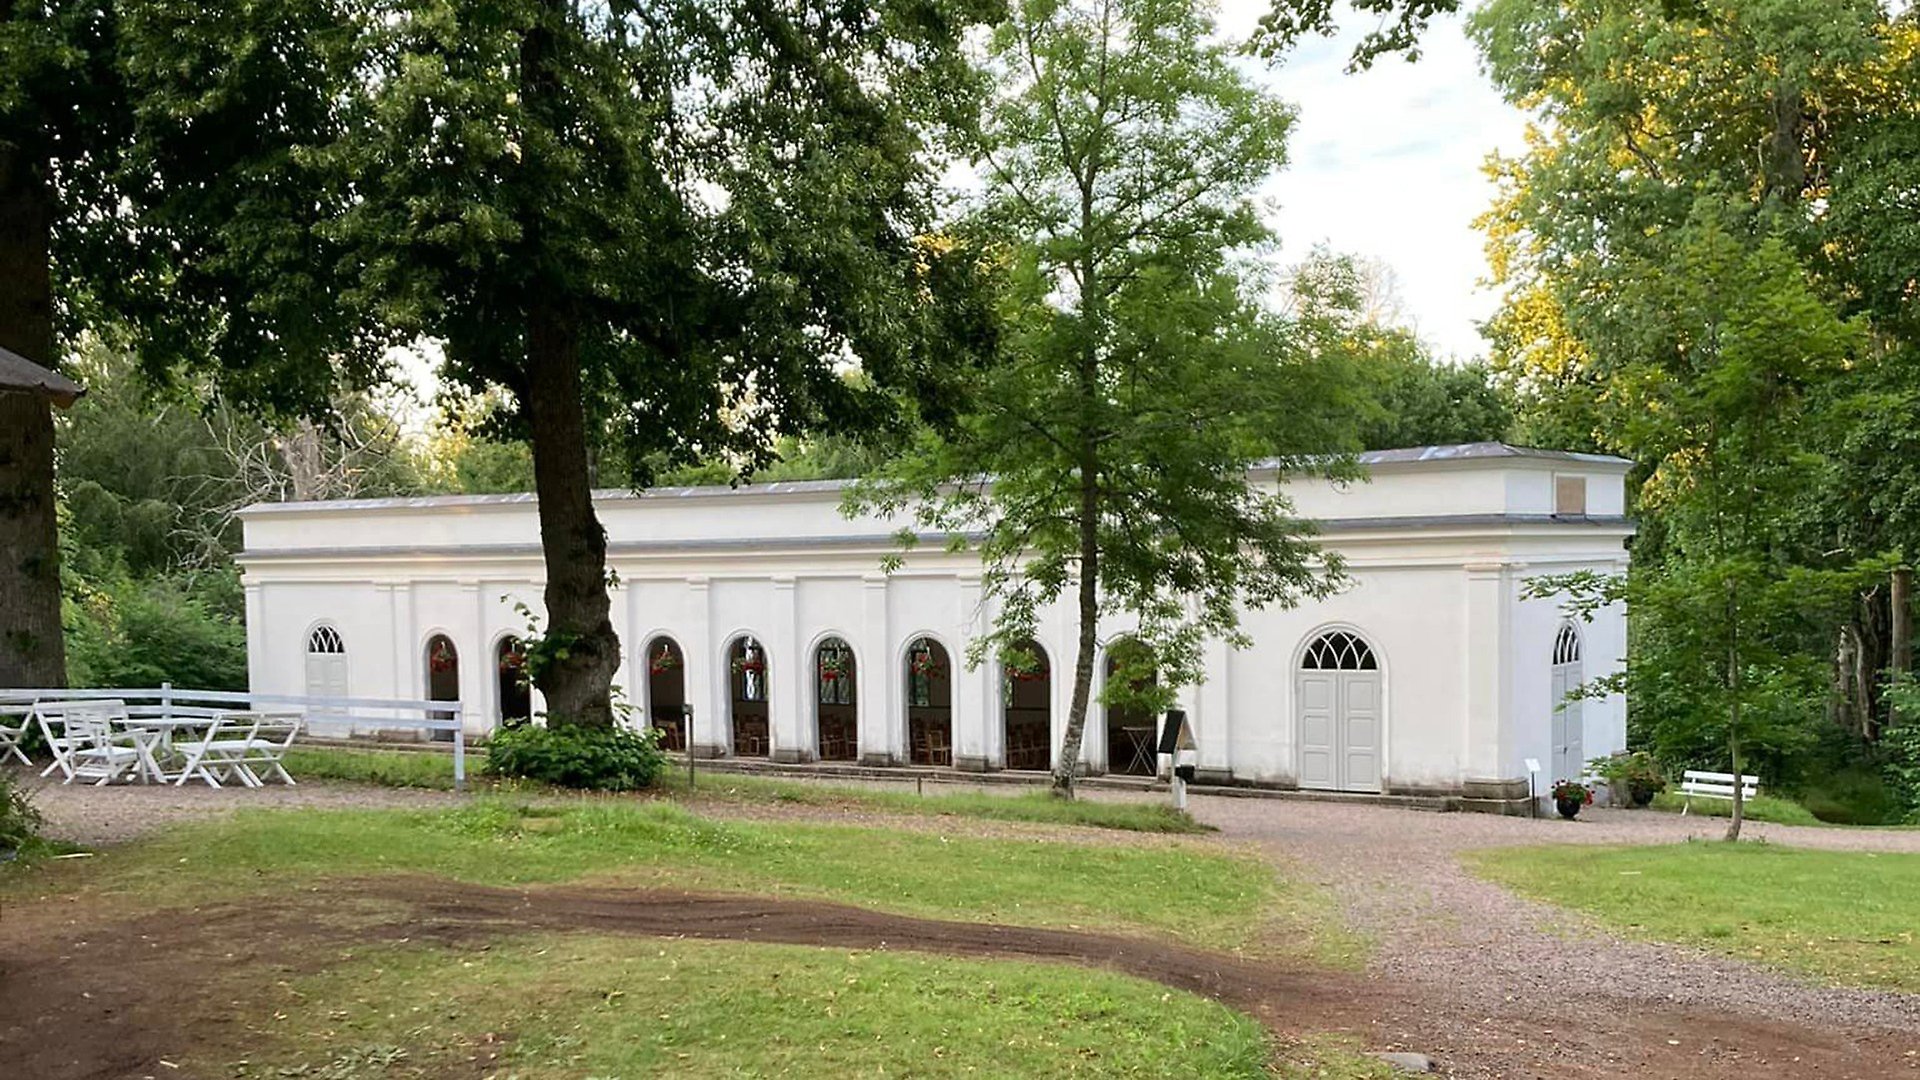 Högbrunnen vid Medevi Brunn, en avlång vit byggnad med höga valvfönster. I förgrunden finns flera grönskande träd och en gräsmatta. 